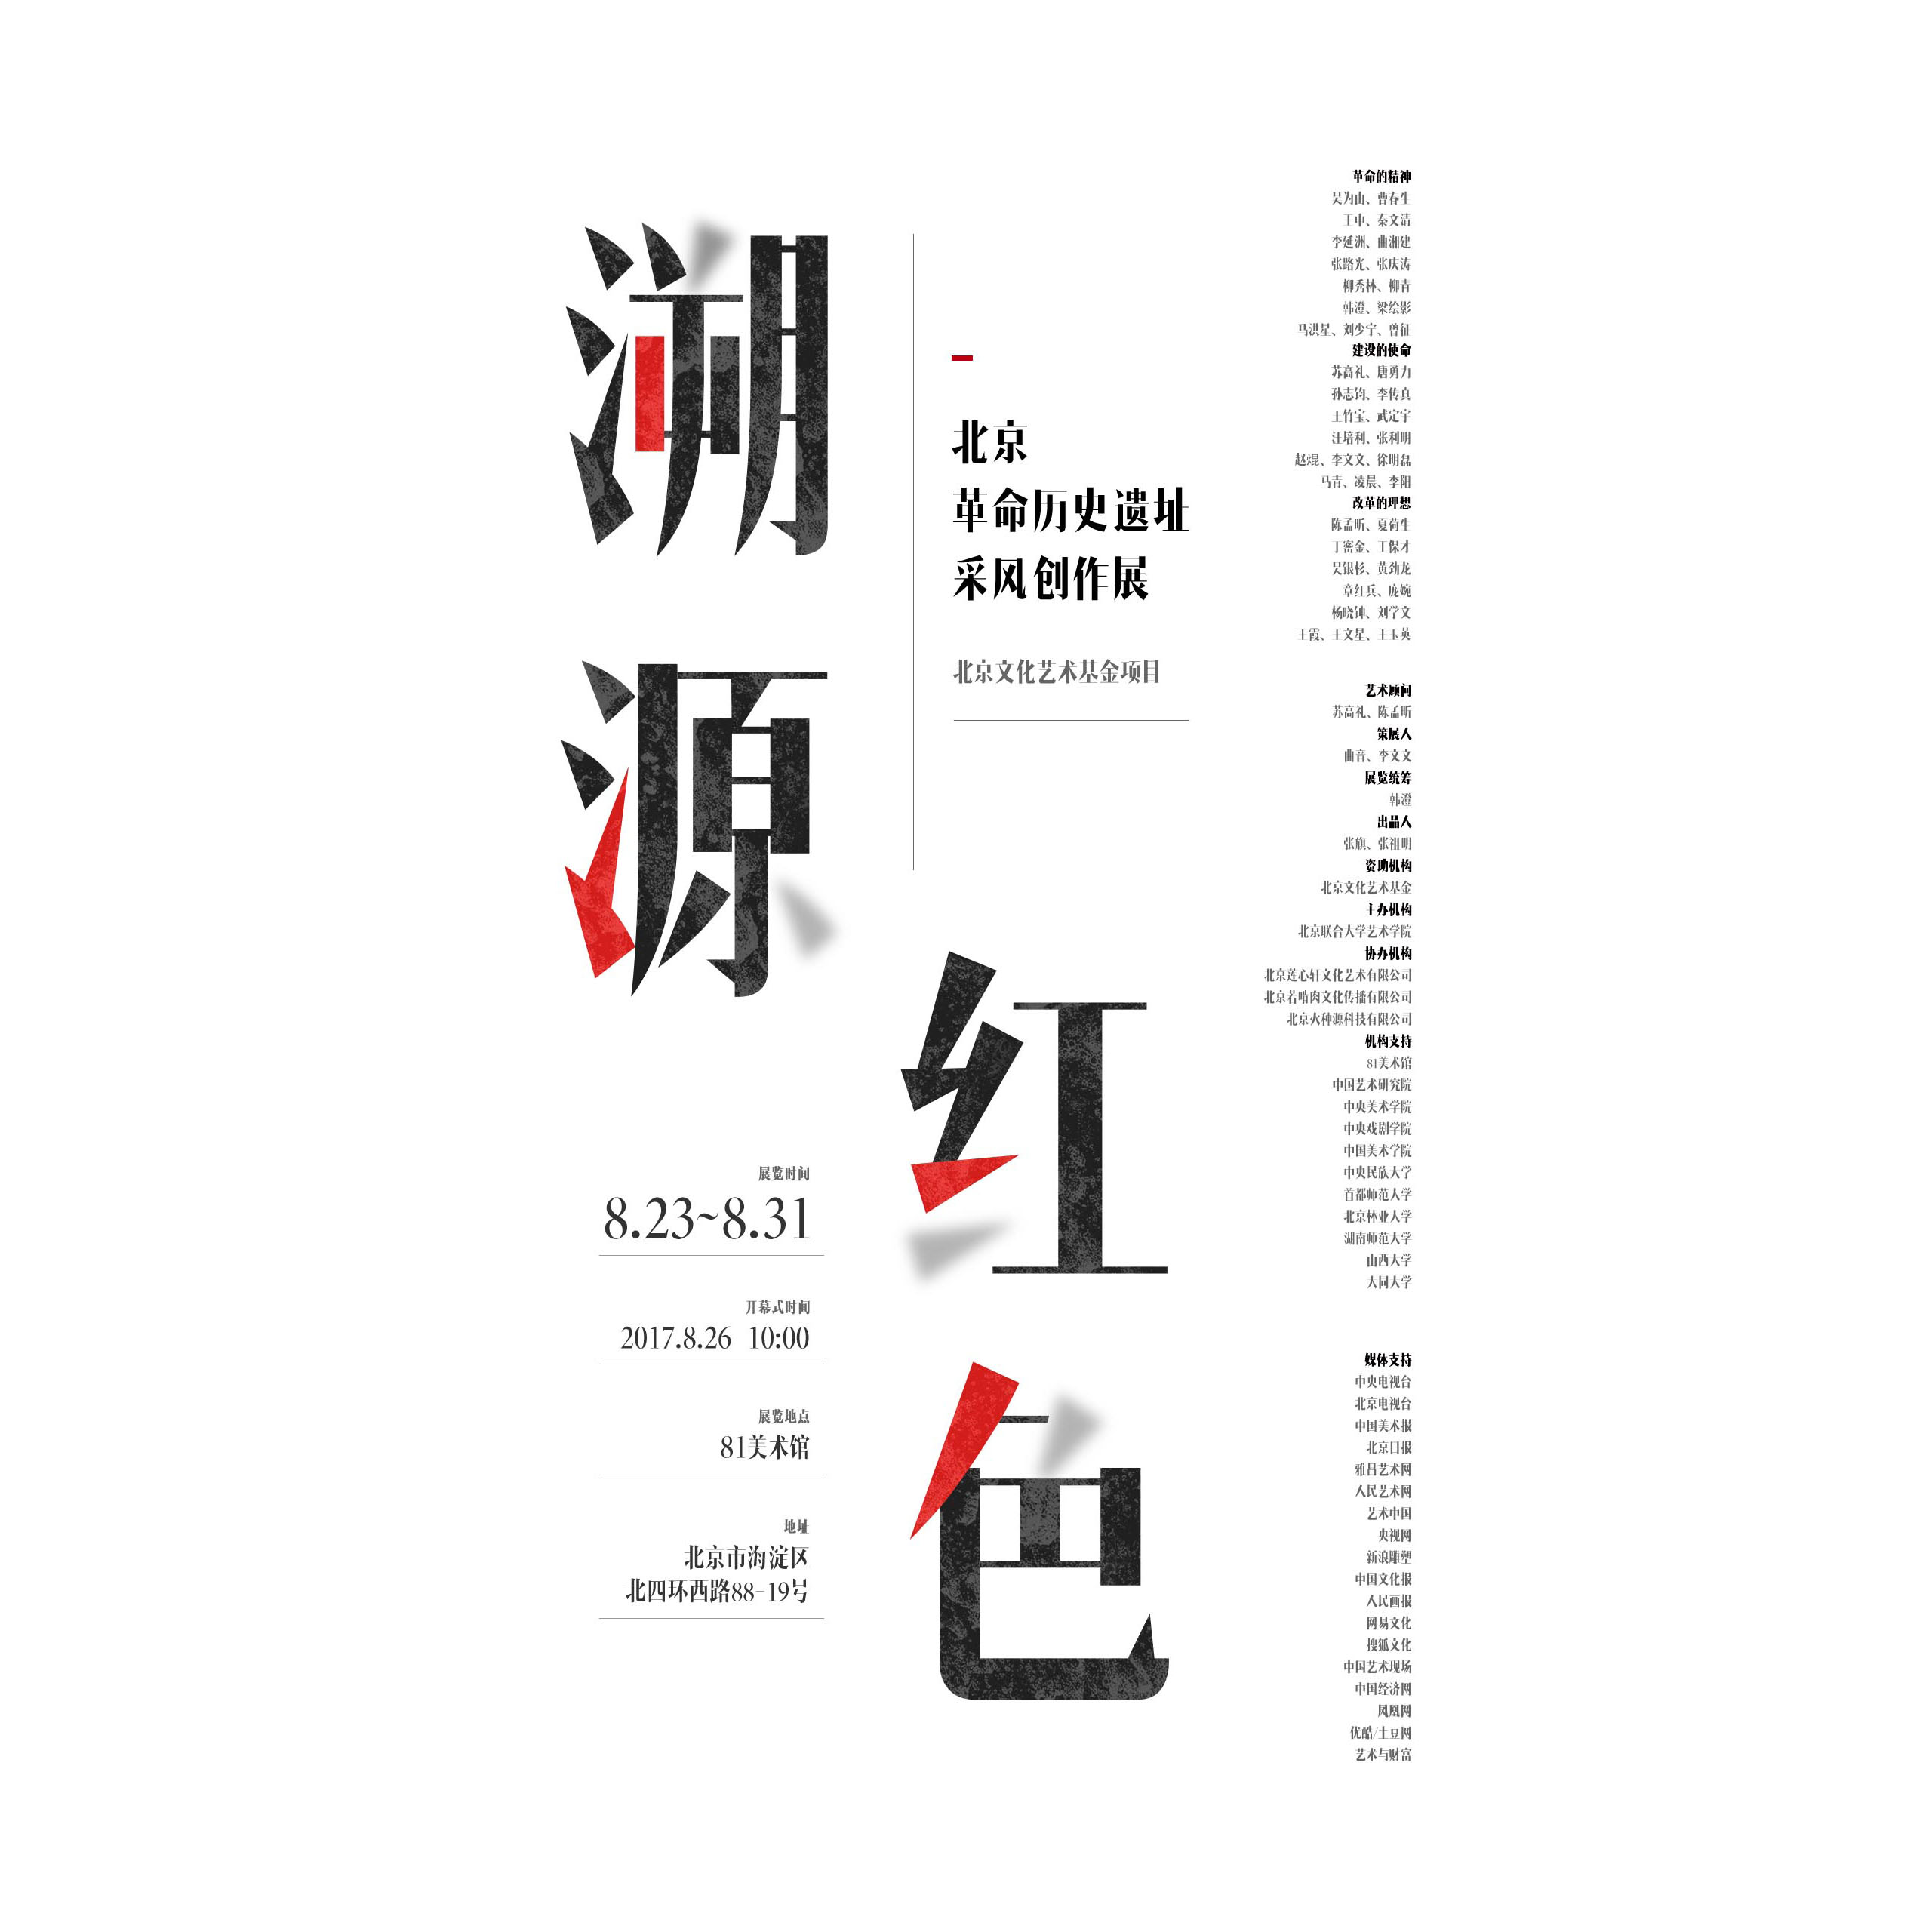 「溯源红色」北京革命历史遗址采风创作展